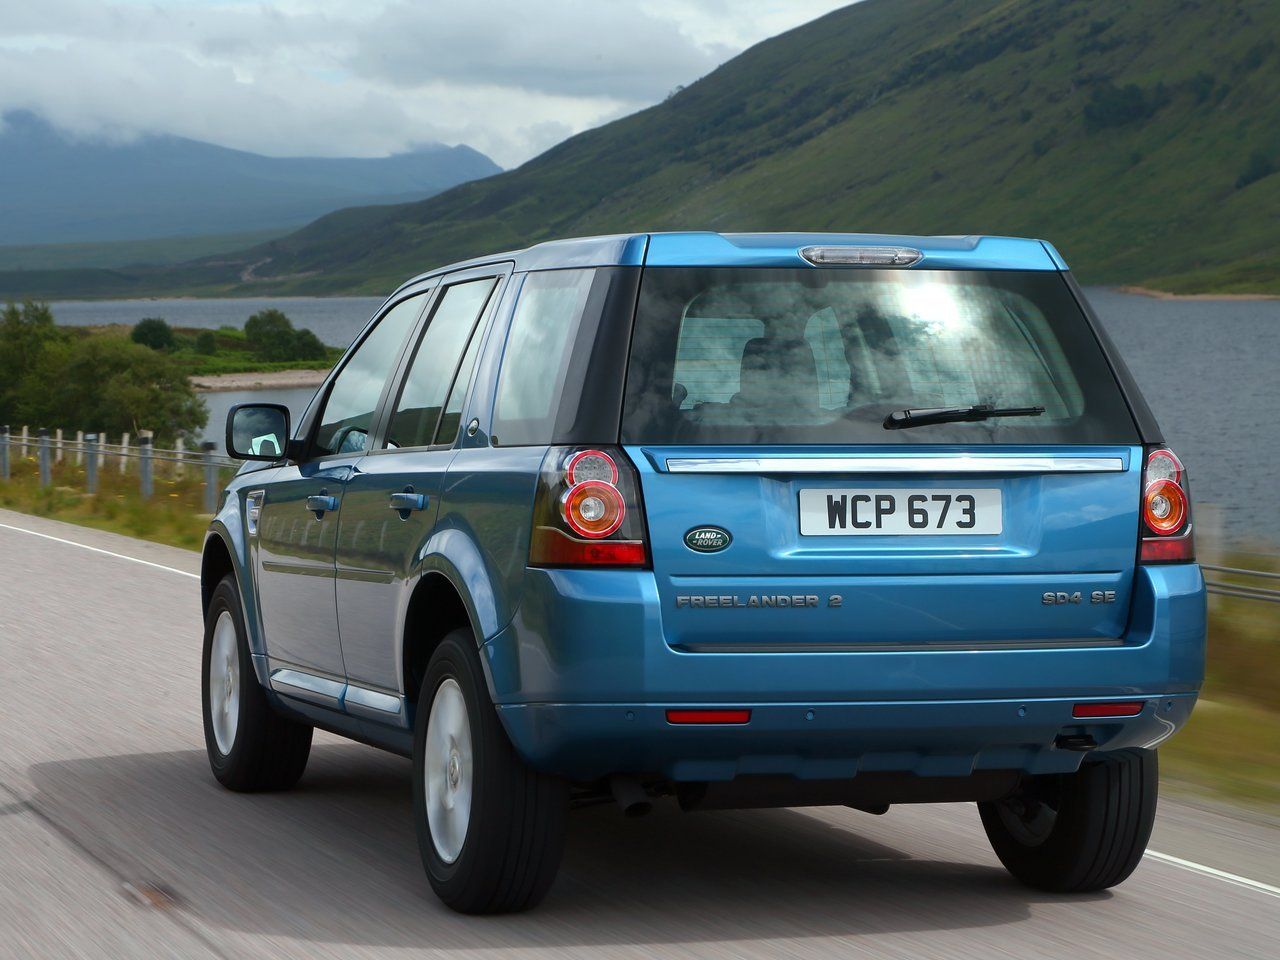 Лучшие модификации Land Rover Freelander II для покупки с пробегом.